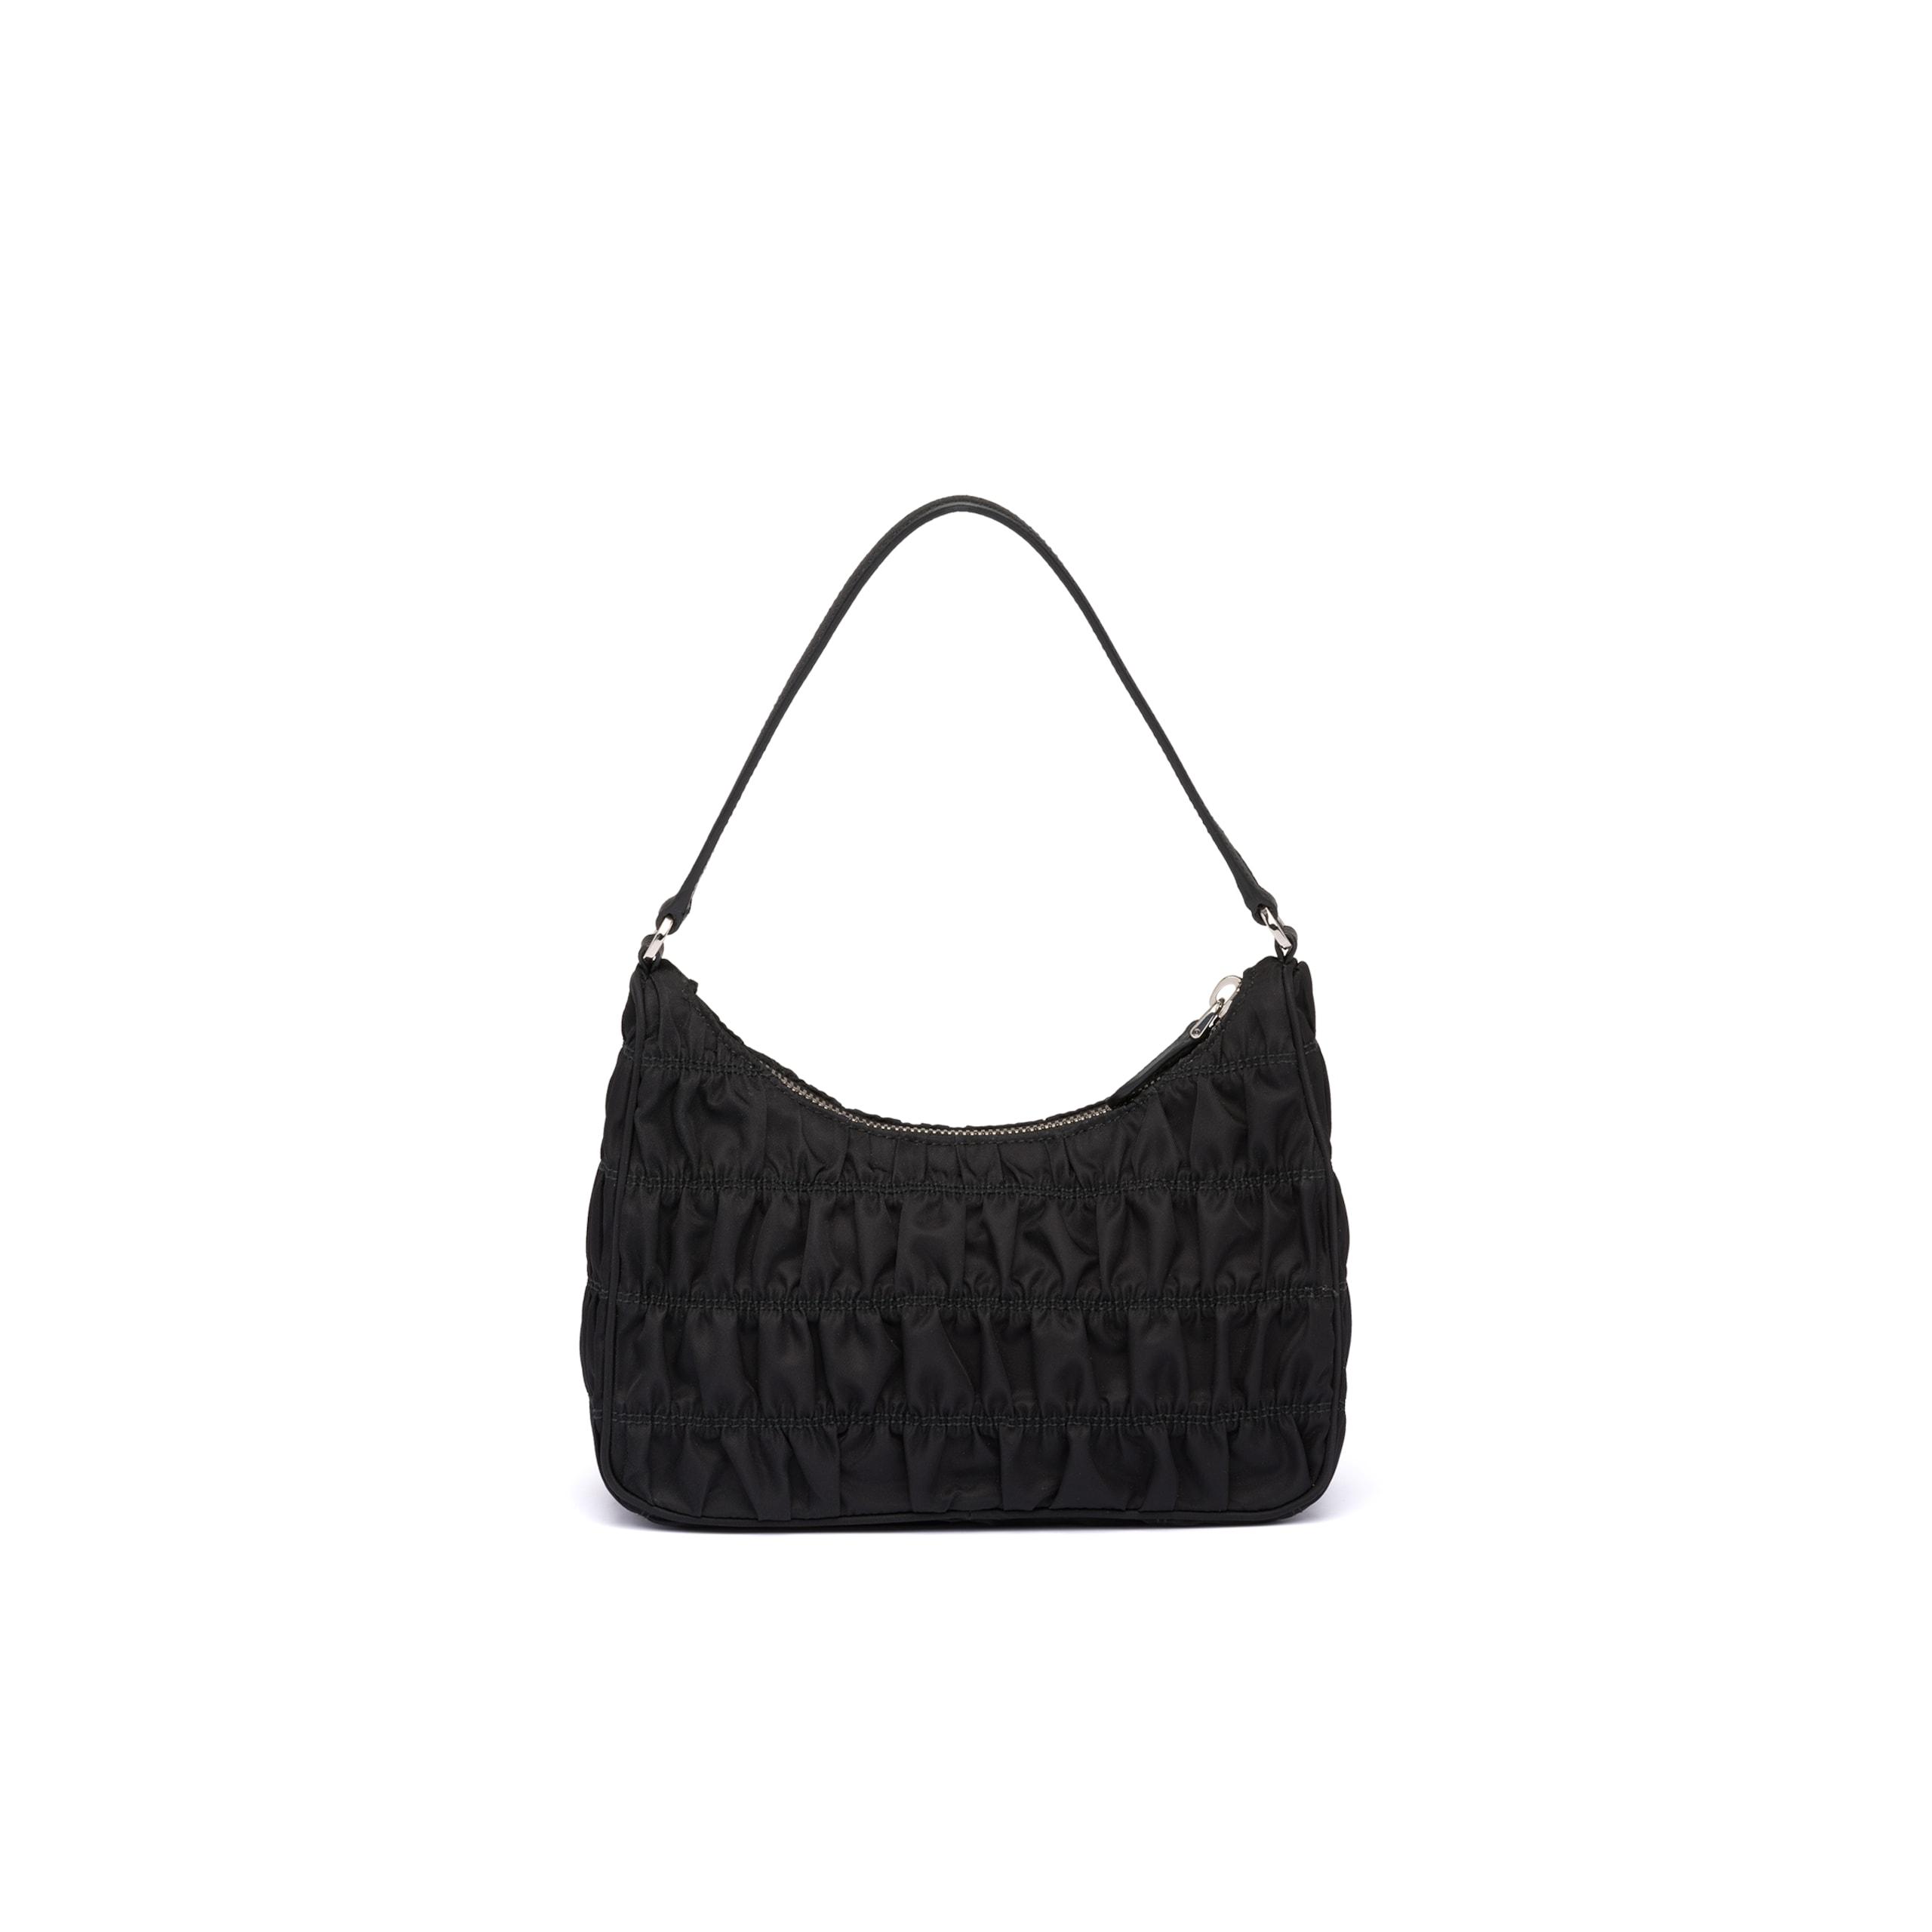 Prada Nylon And Saffiano Leather Mini Bag in Black | Lyst